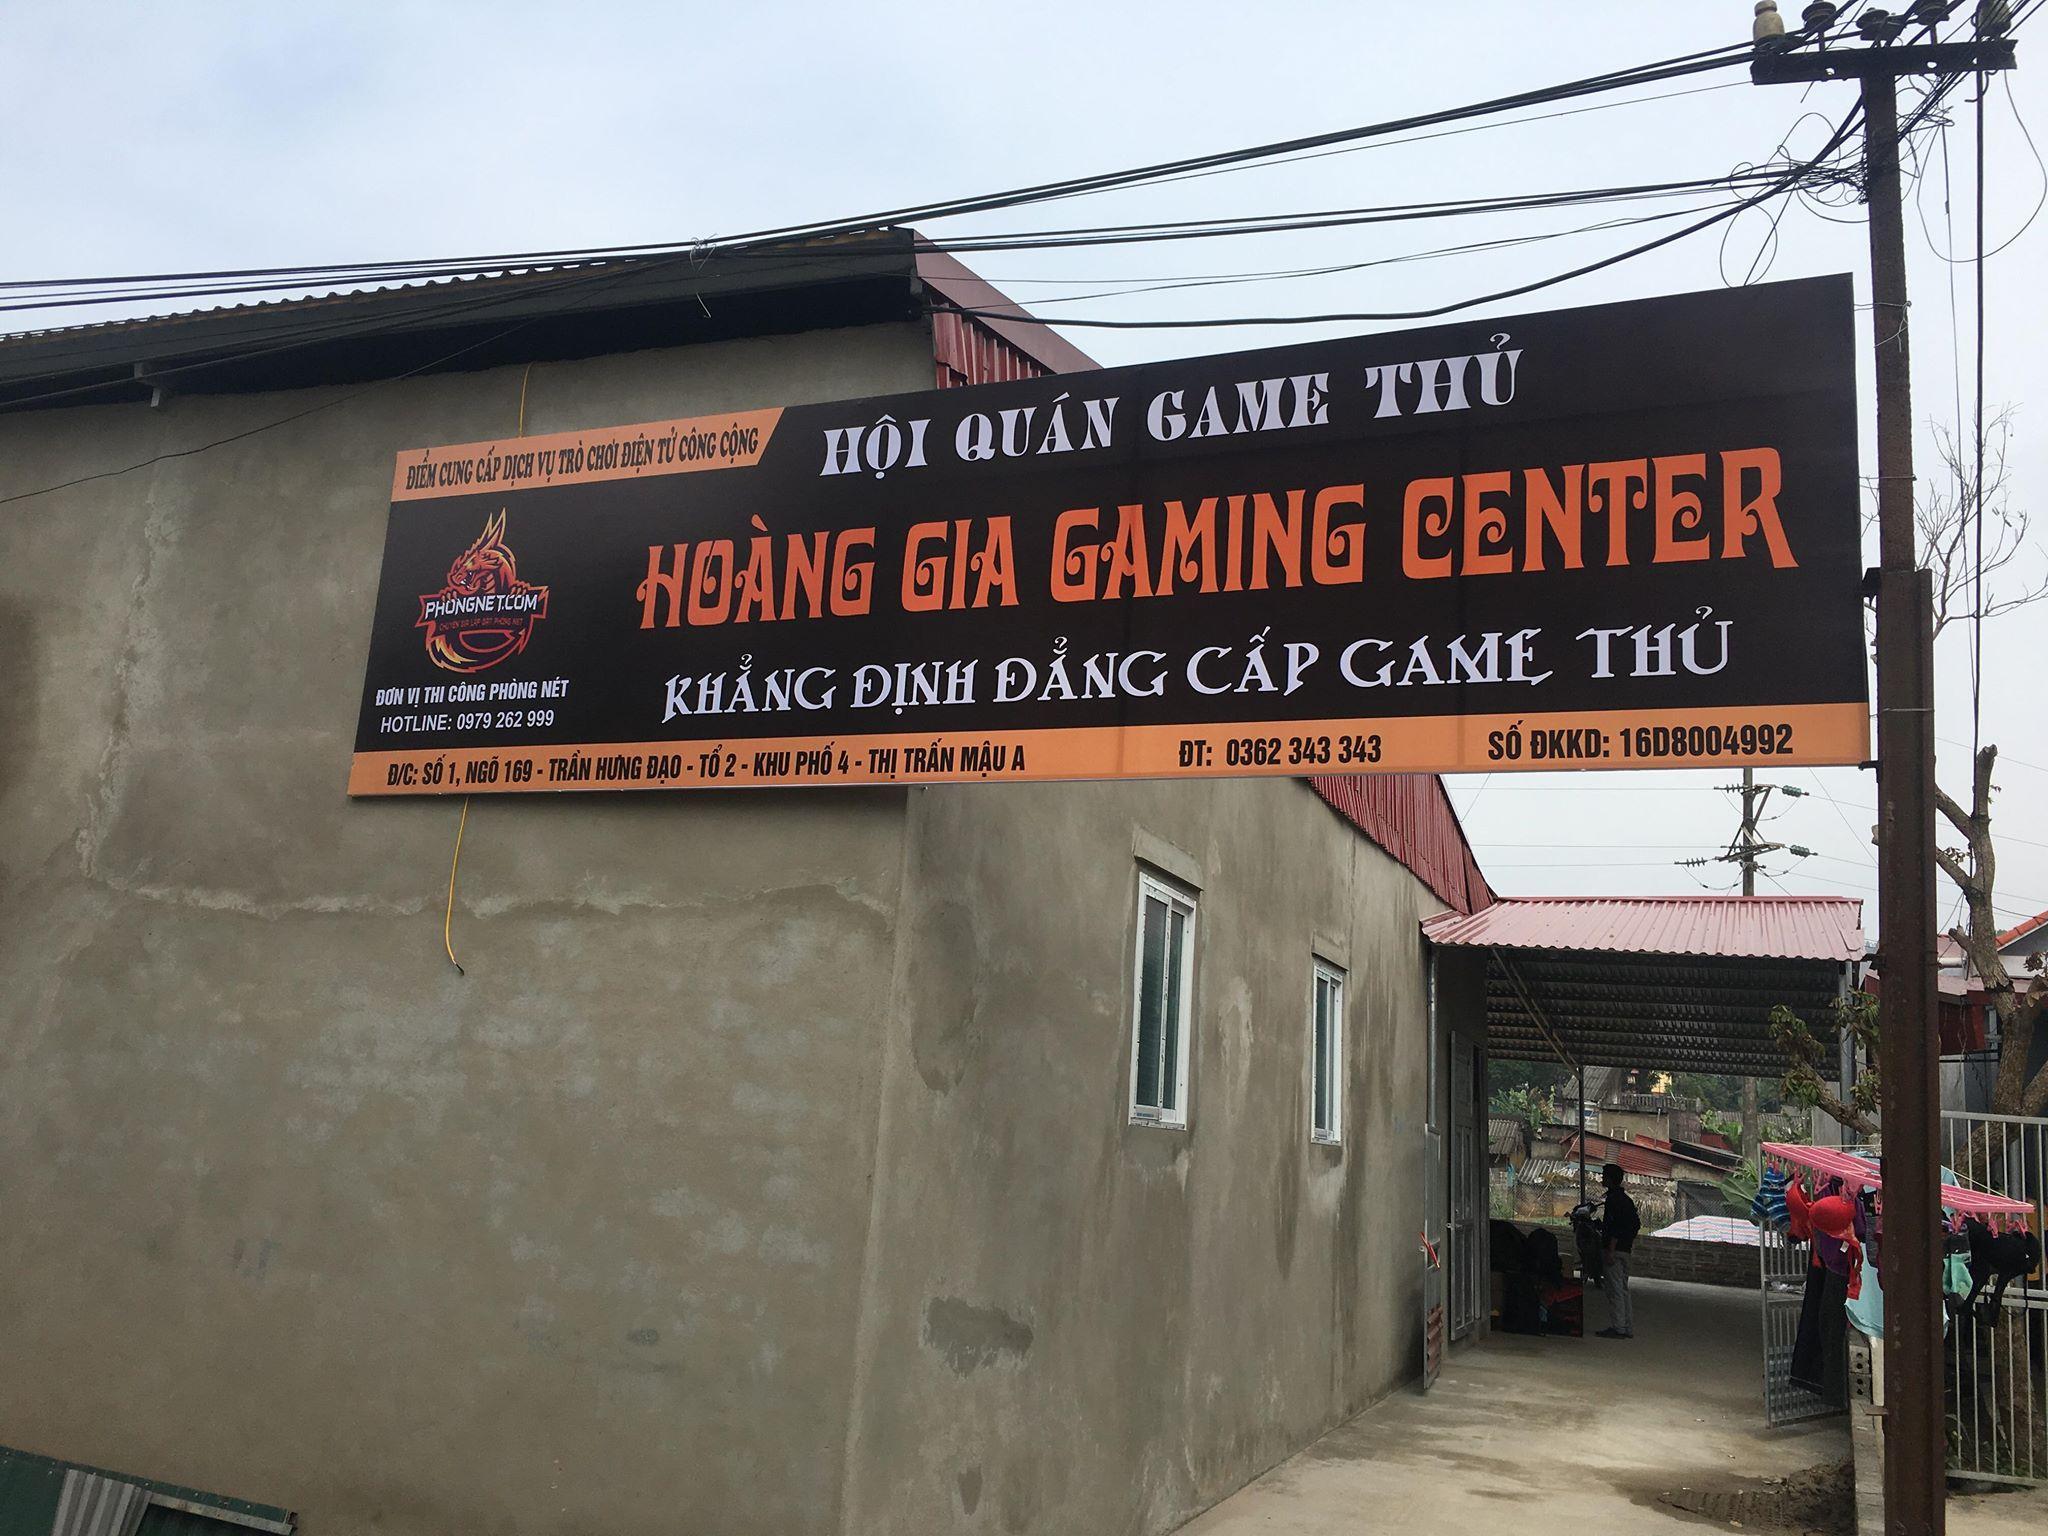 Dự Án Hoàng Gia Gaming Center tại Mậu A – Yên Bái